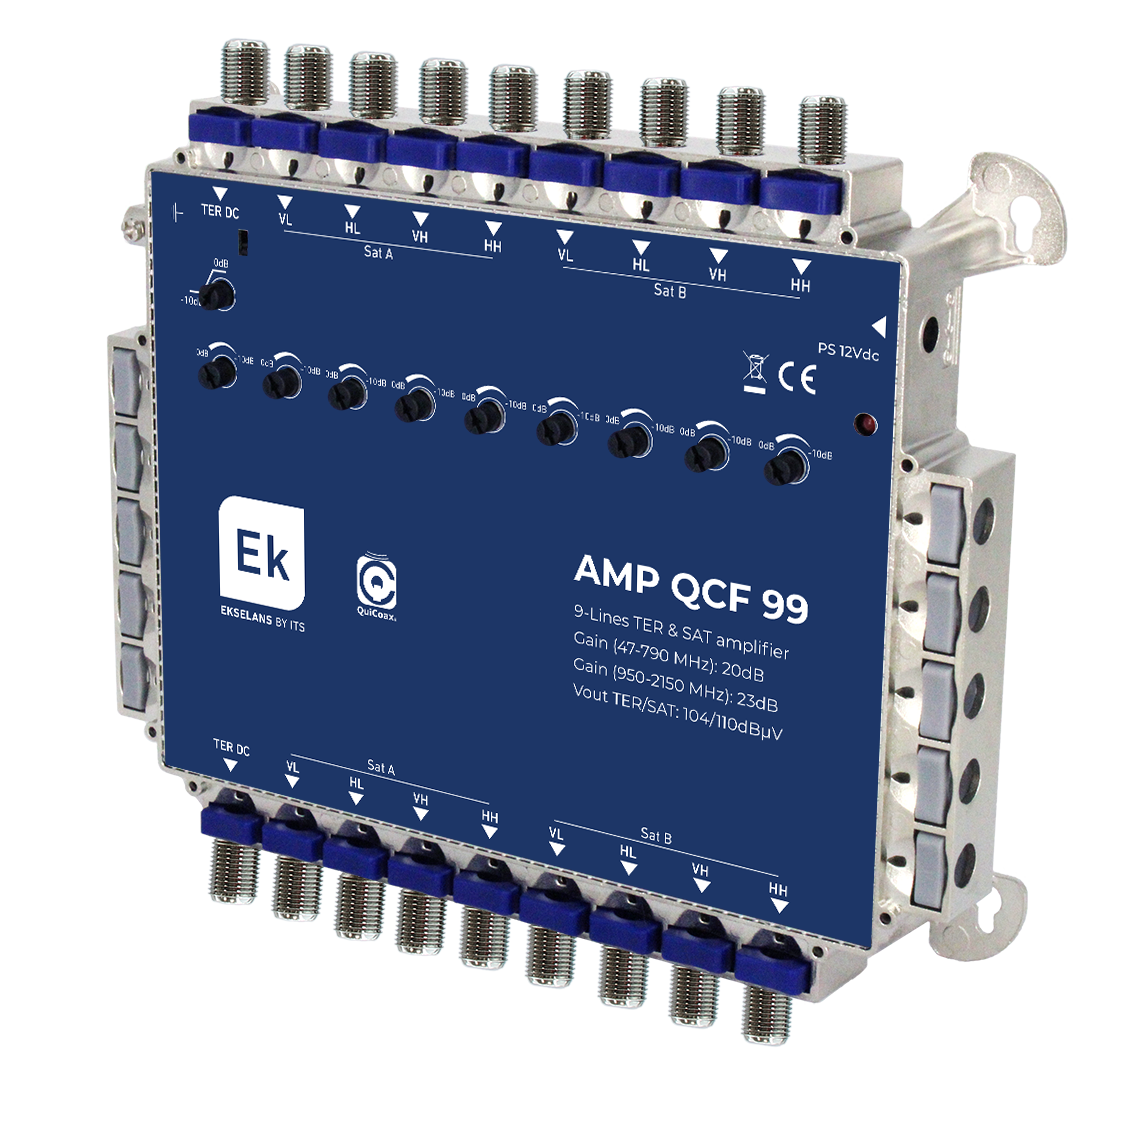 AMP QCF 99